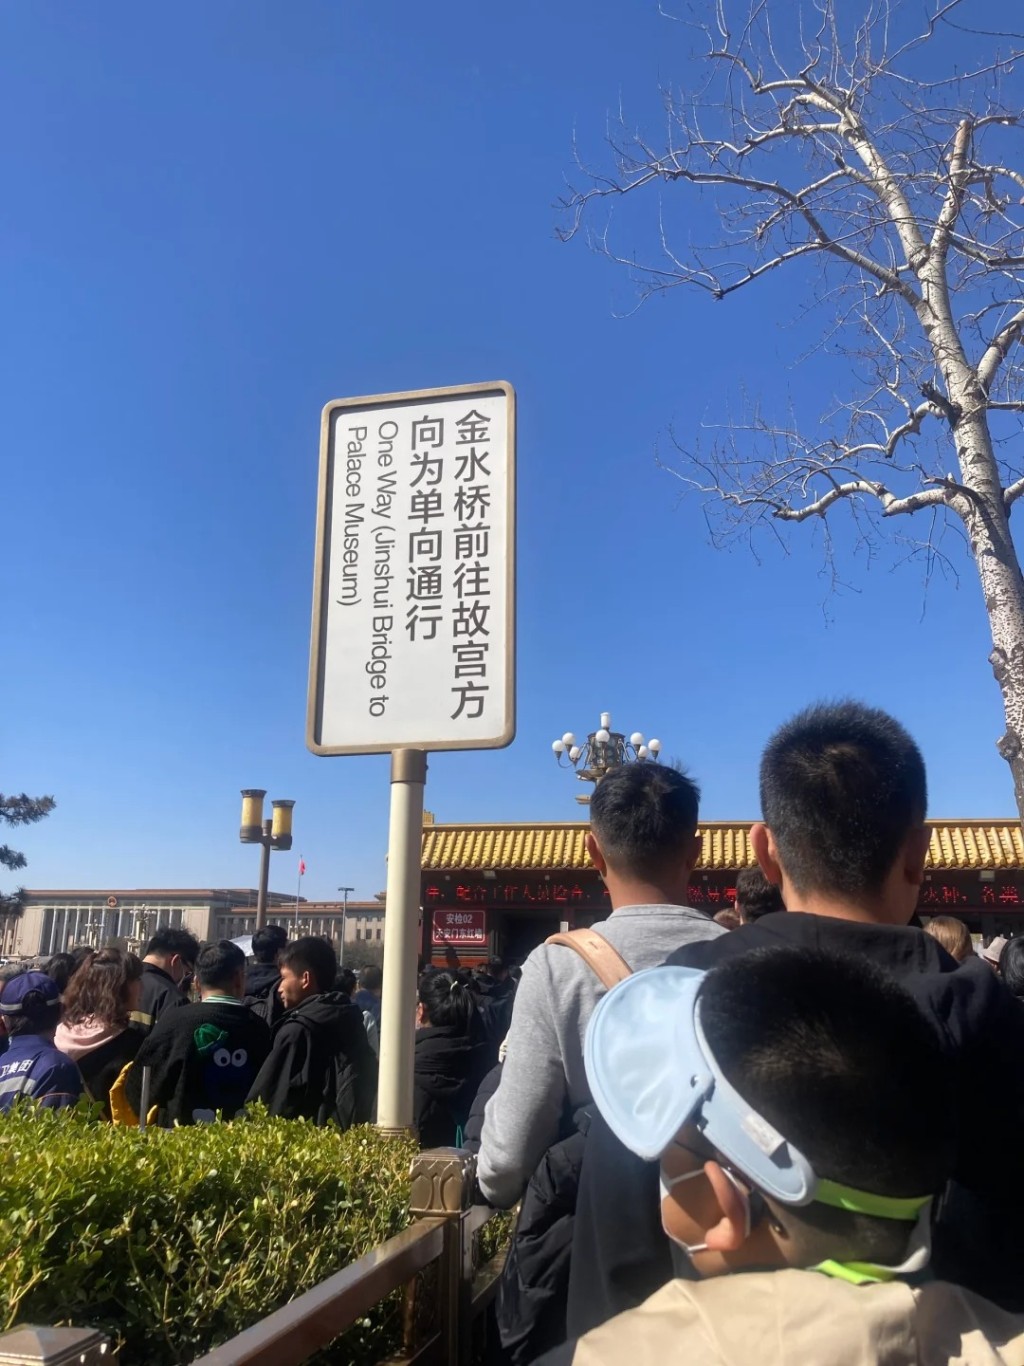 清明节3天小长假内地民众趁机出游。图为北京故宫。